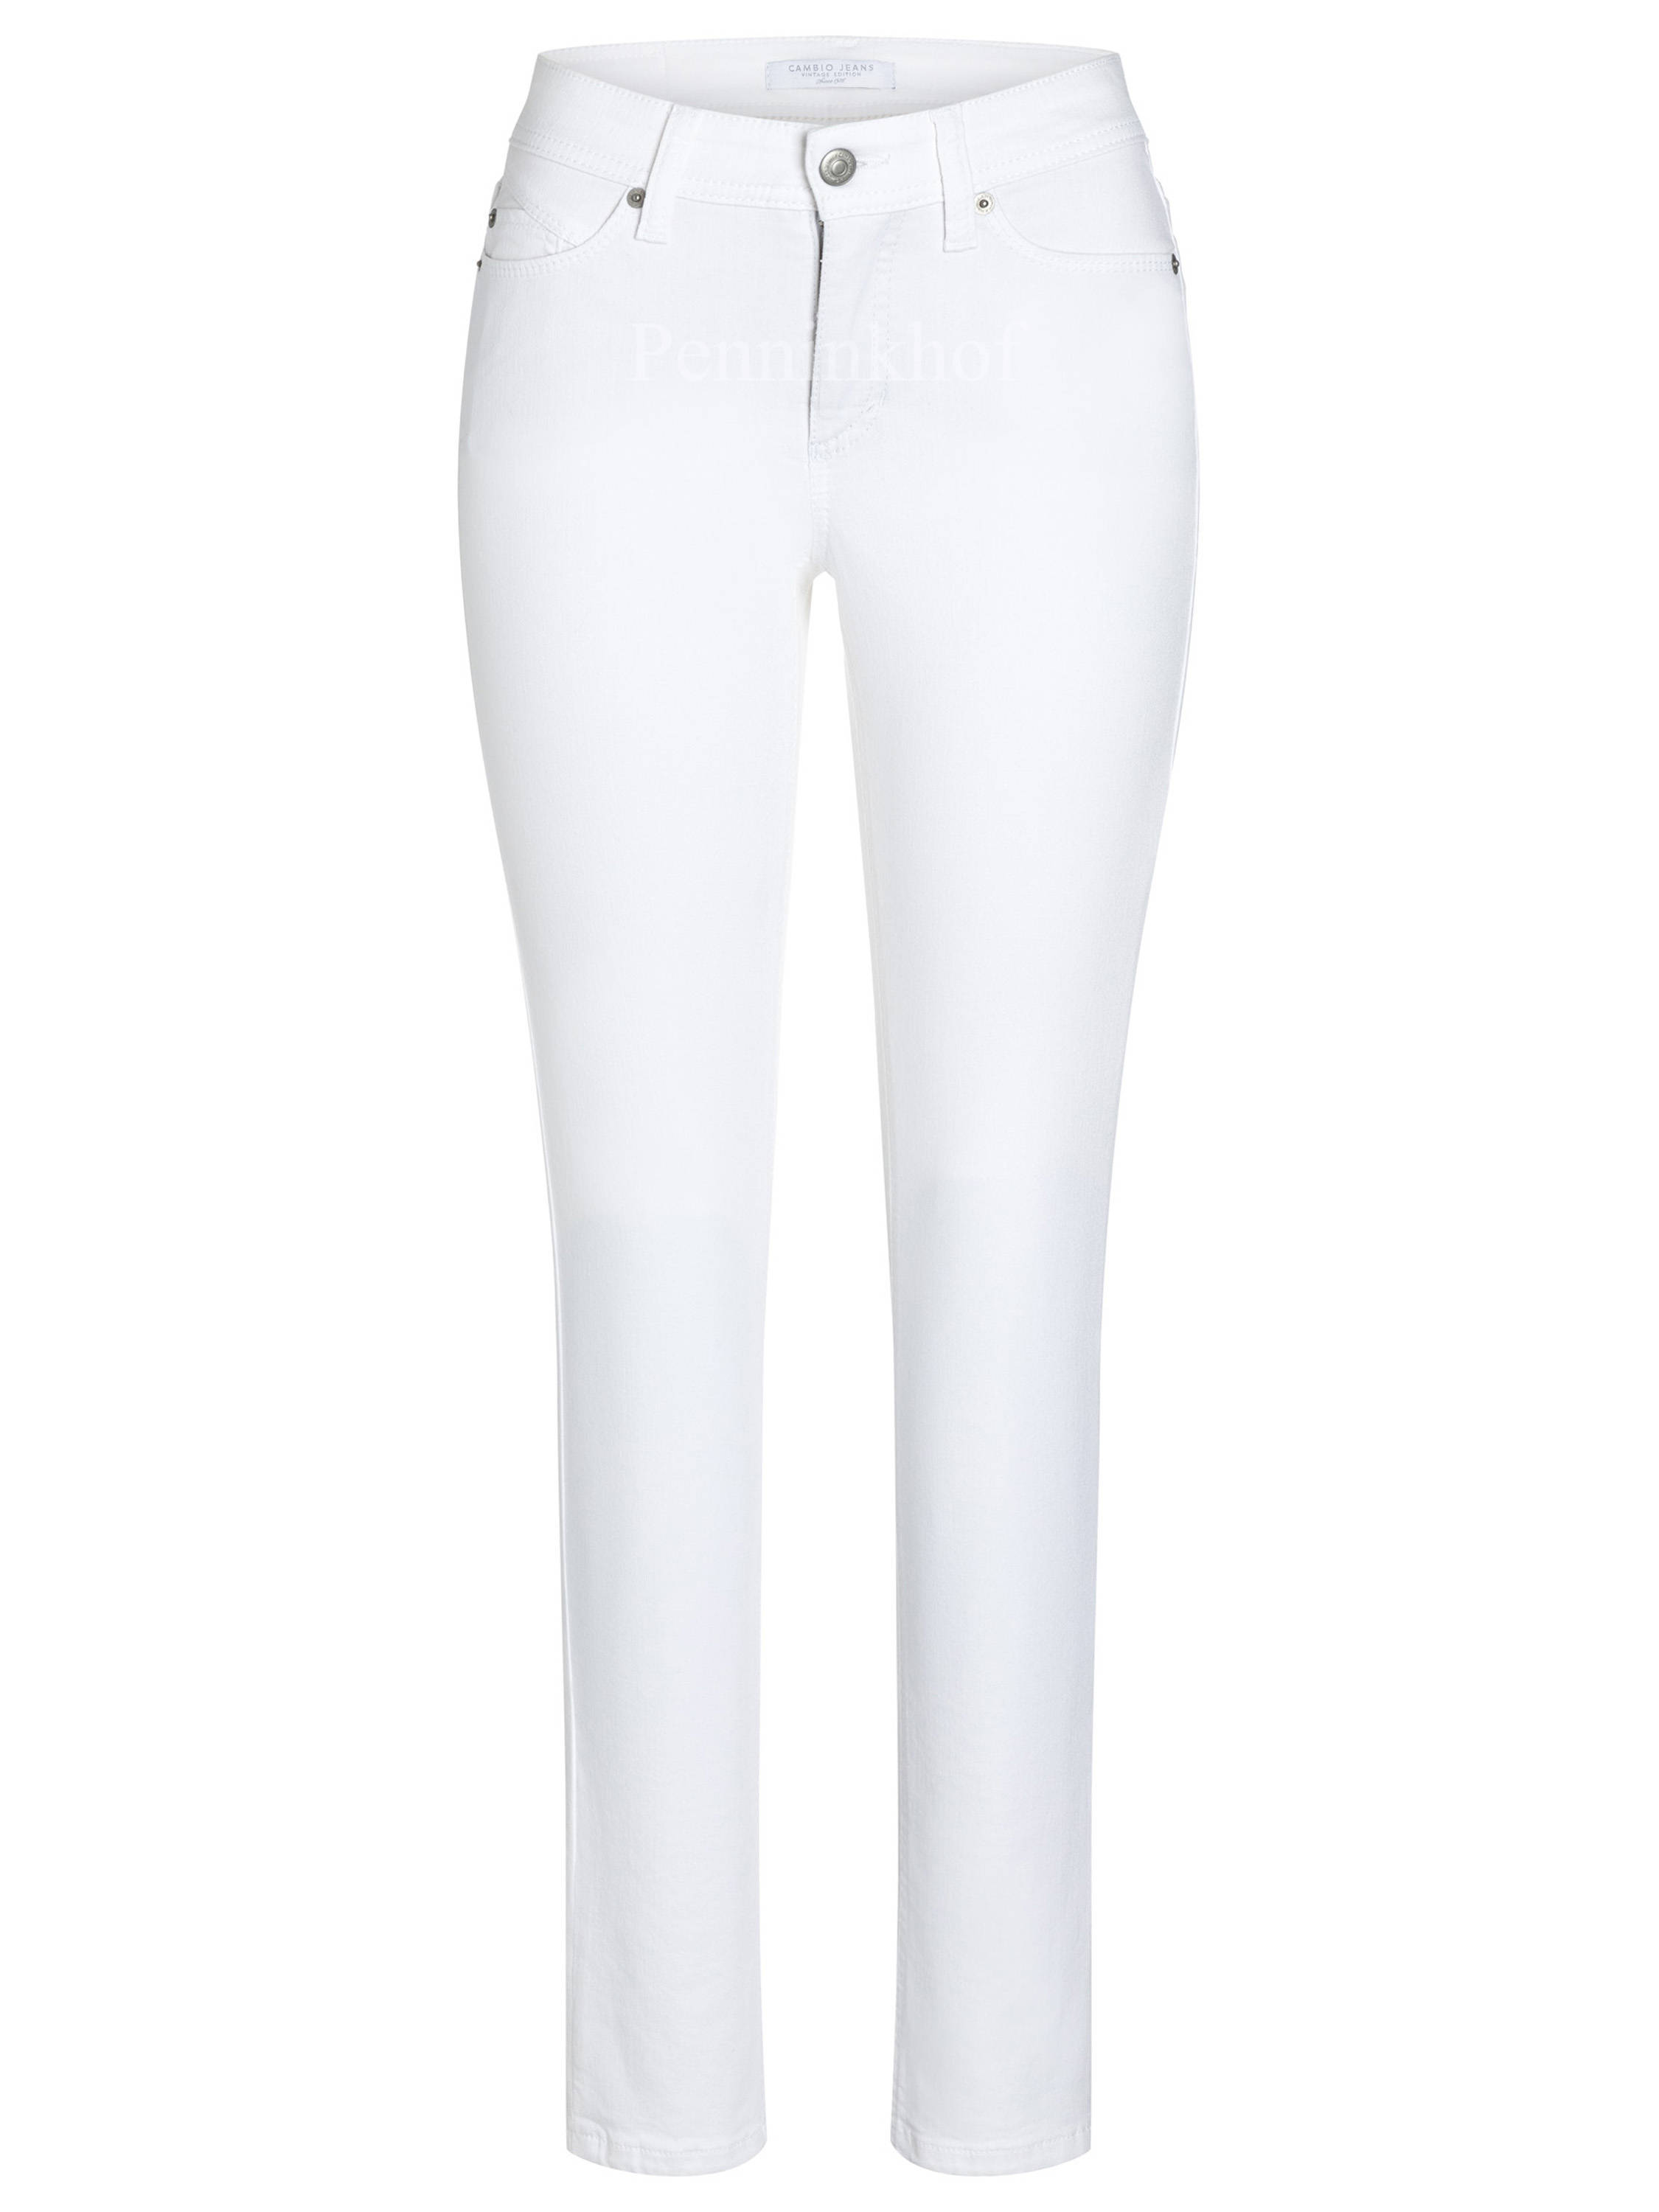 Verplicht Identiteit beloning Cambio trousers PARLA 9047 0015-99 White by Penninkhoffashion.com